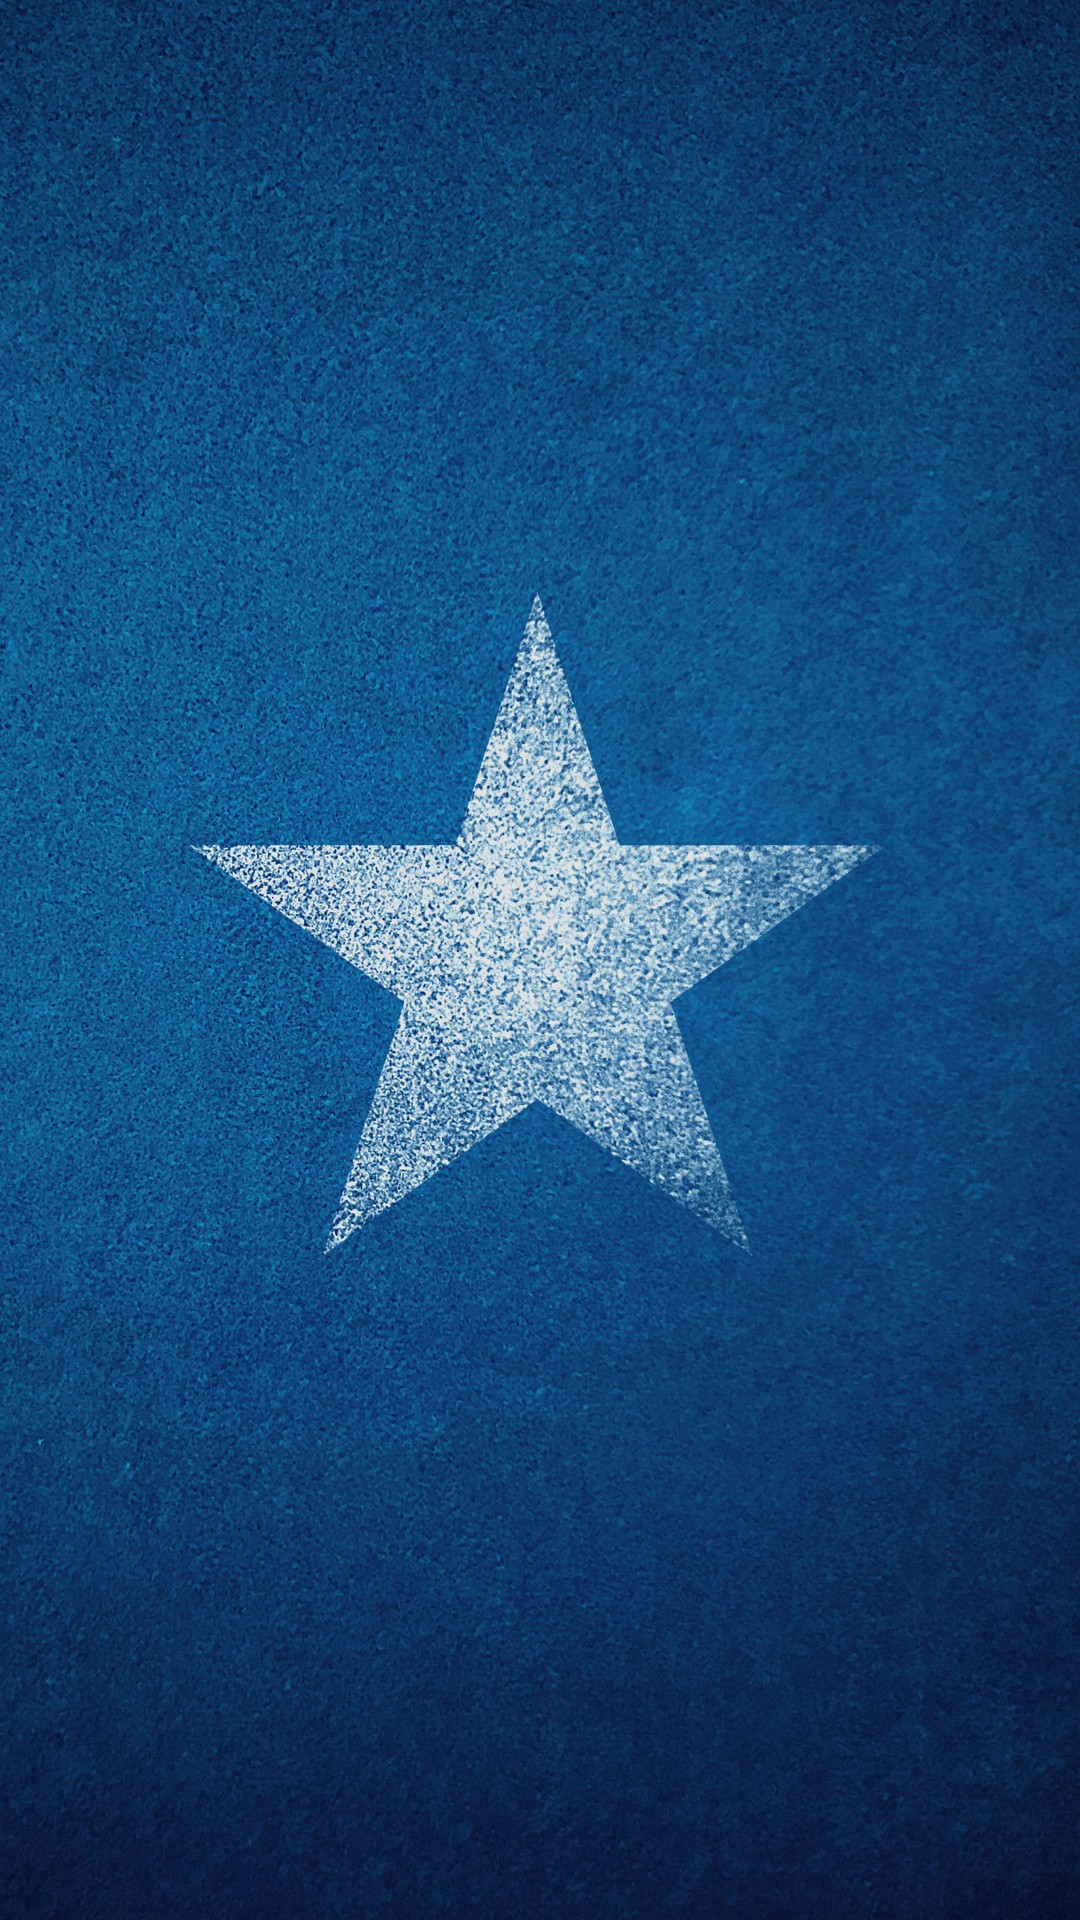 simple star wallpaper